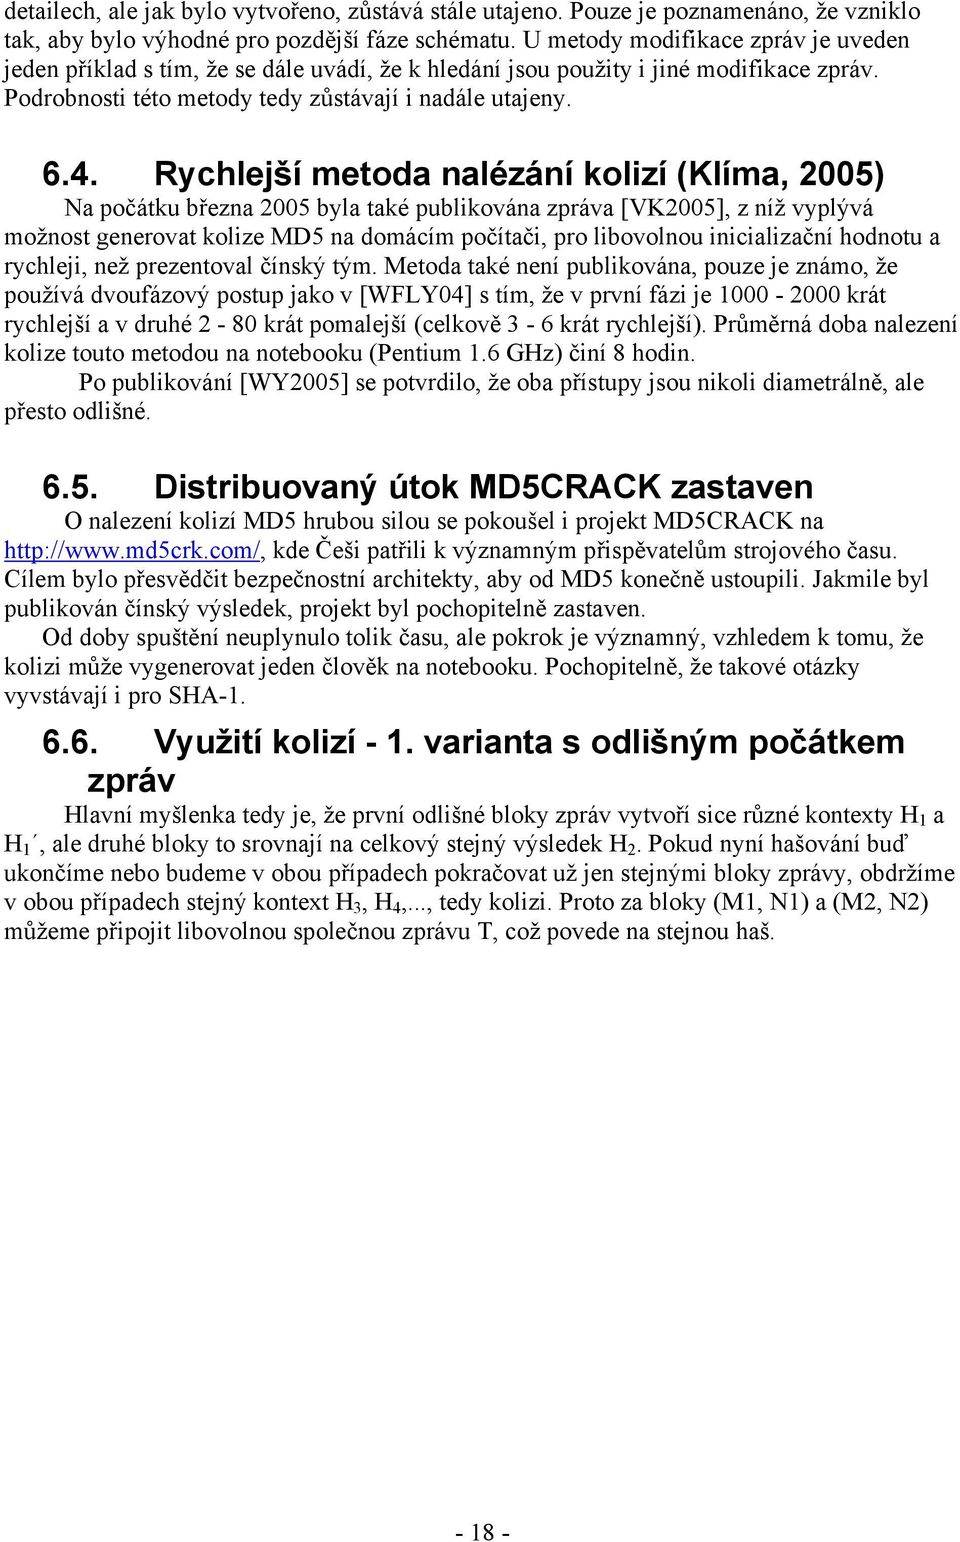 Rychlejší metoda nalézání kolizí (Klíma, 2005) Na počátku března 2005 byla také publikována zpráva [VK2005], z níž vyplývá možnost generovat kolize MD5 na domácím počítači, pro libovolnou